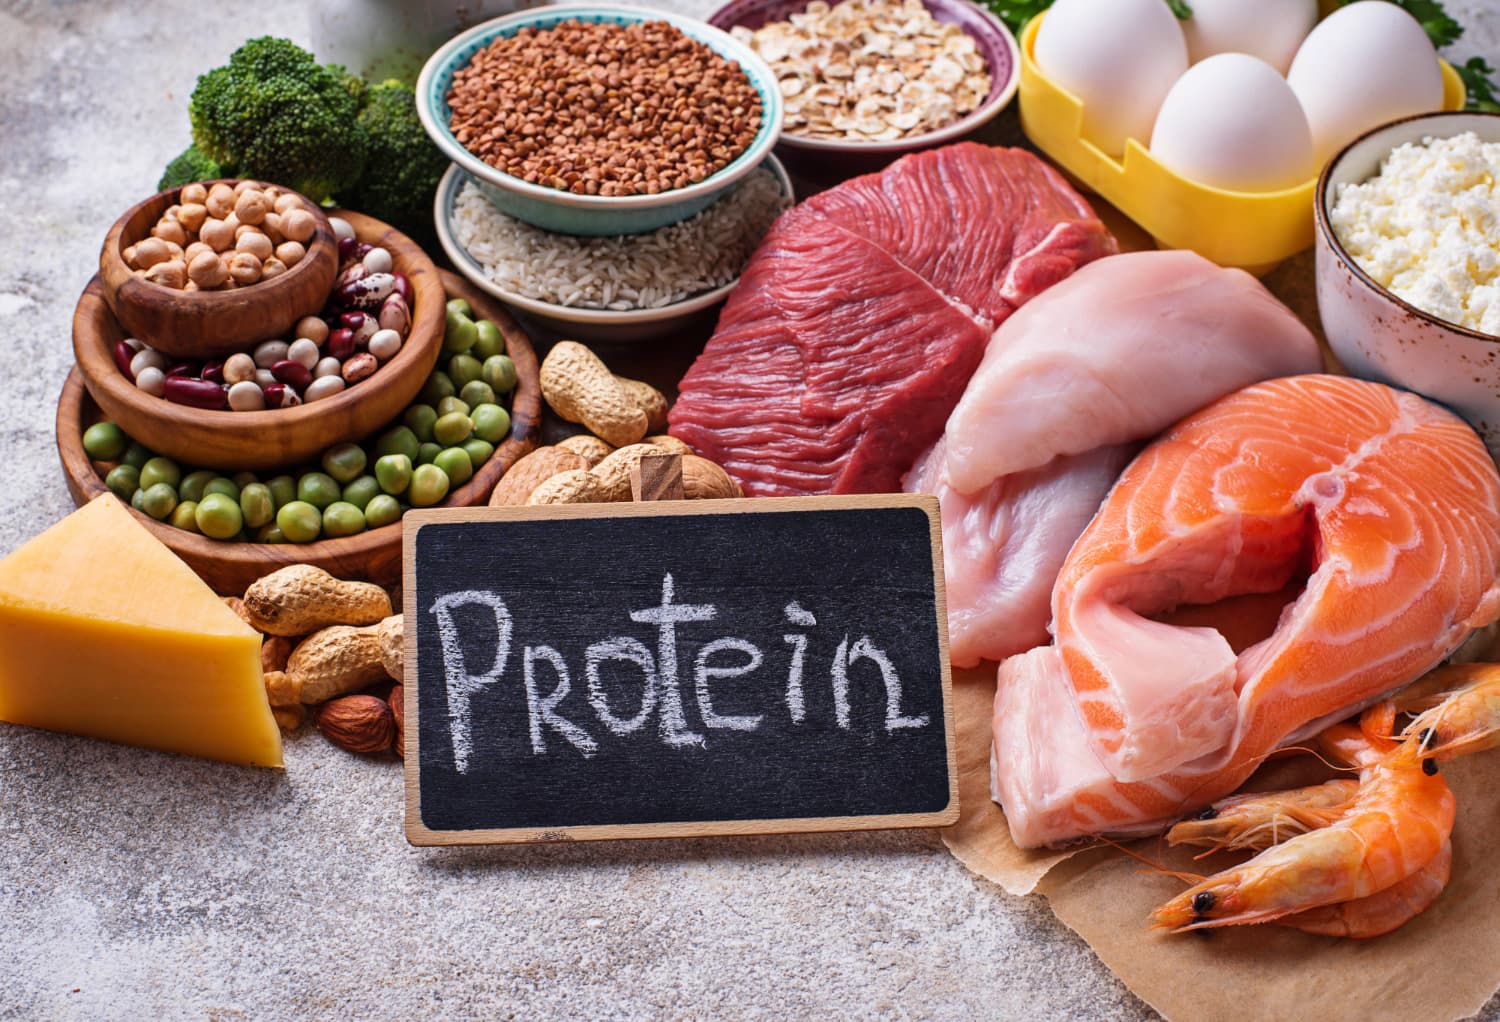 Les dangers de ne pas consommer suffisamment de protéines !